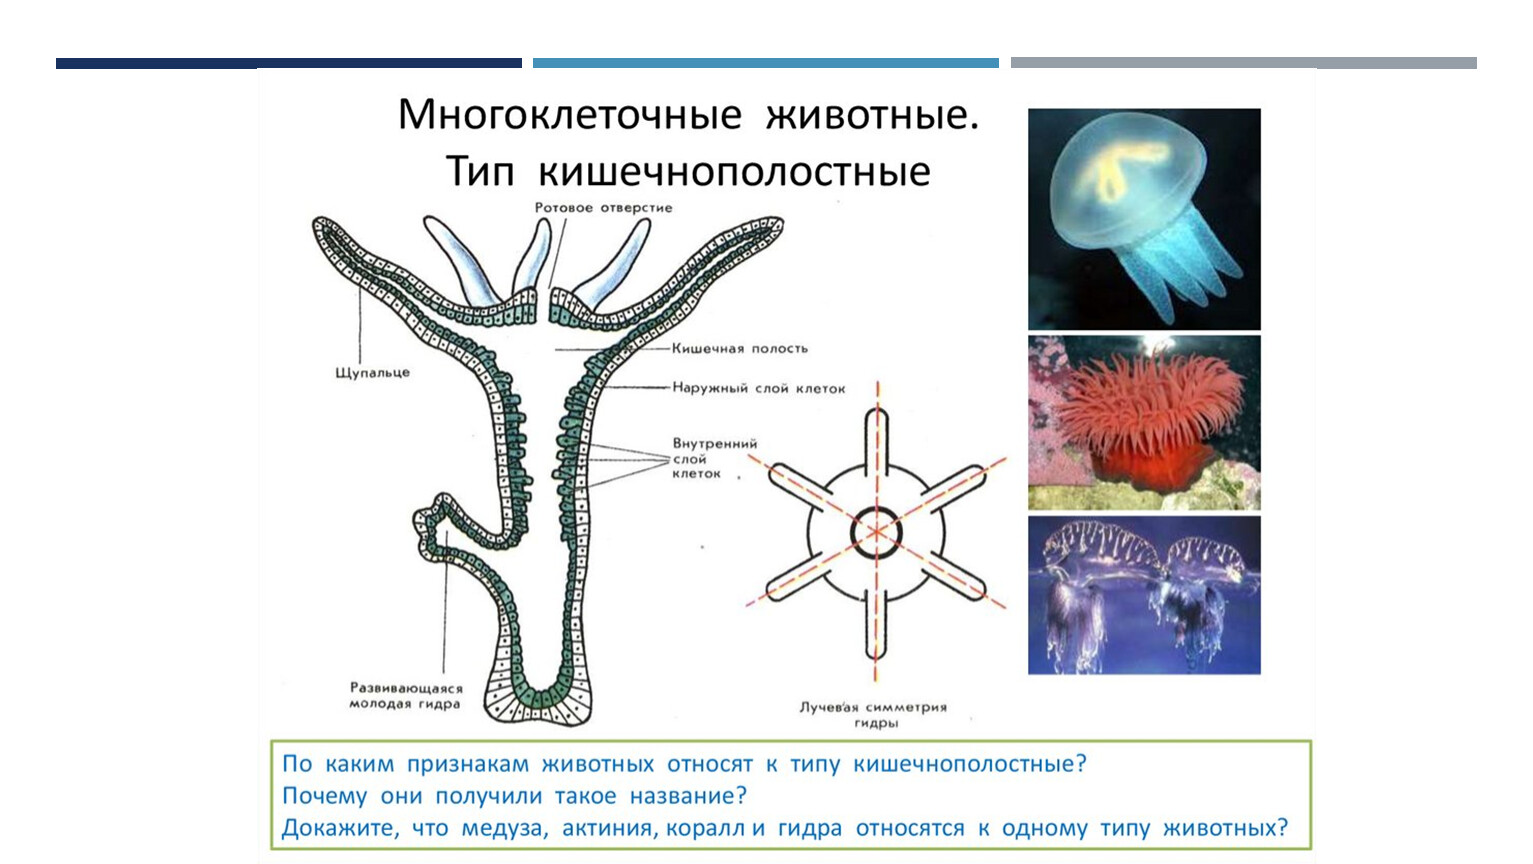 Имеют органы и примитивные ткани. Кишечнополостные гидра медузы кораллы. Тип Кишечнополостные строение медузы. Многоклеточные животные Тип Кишечнополостные. Гидроидные Сцифоидные коралловые полипы.